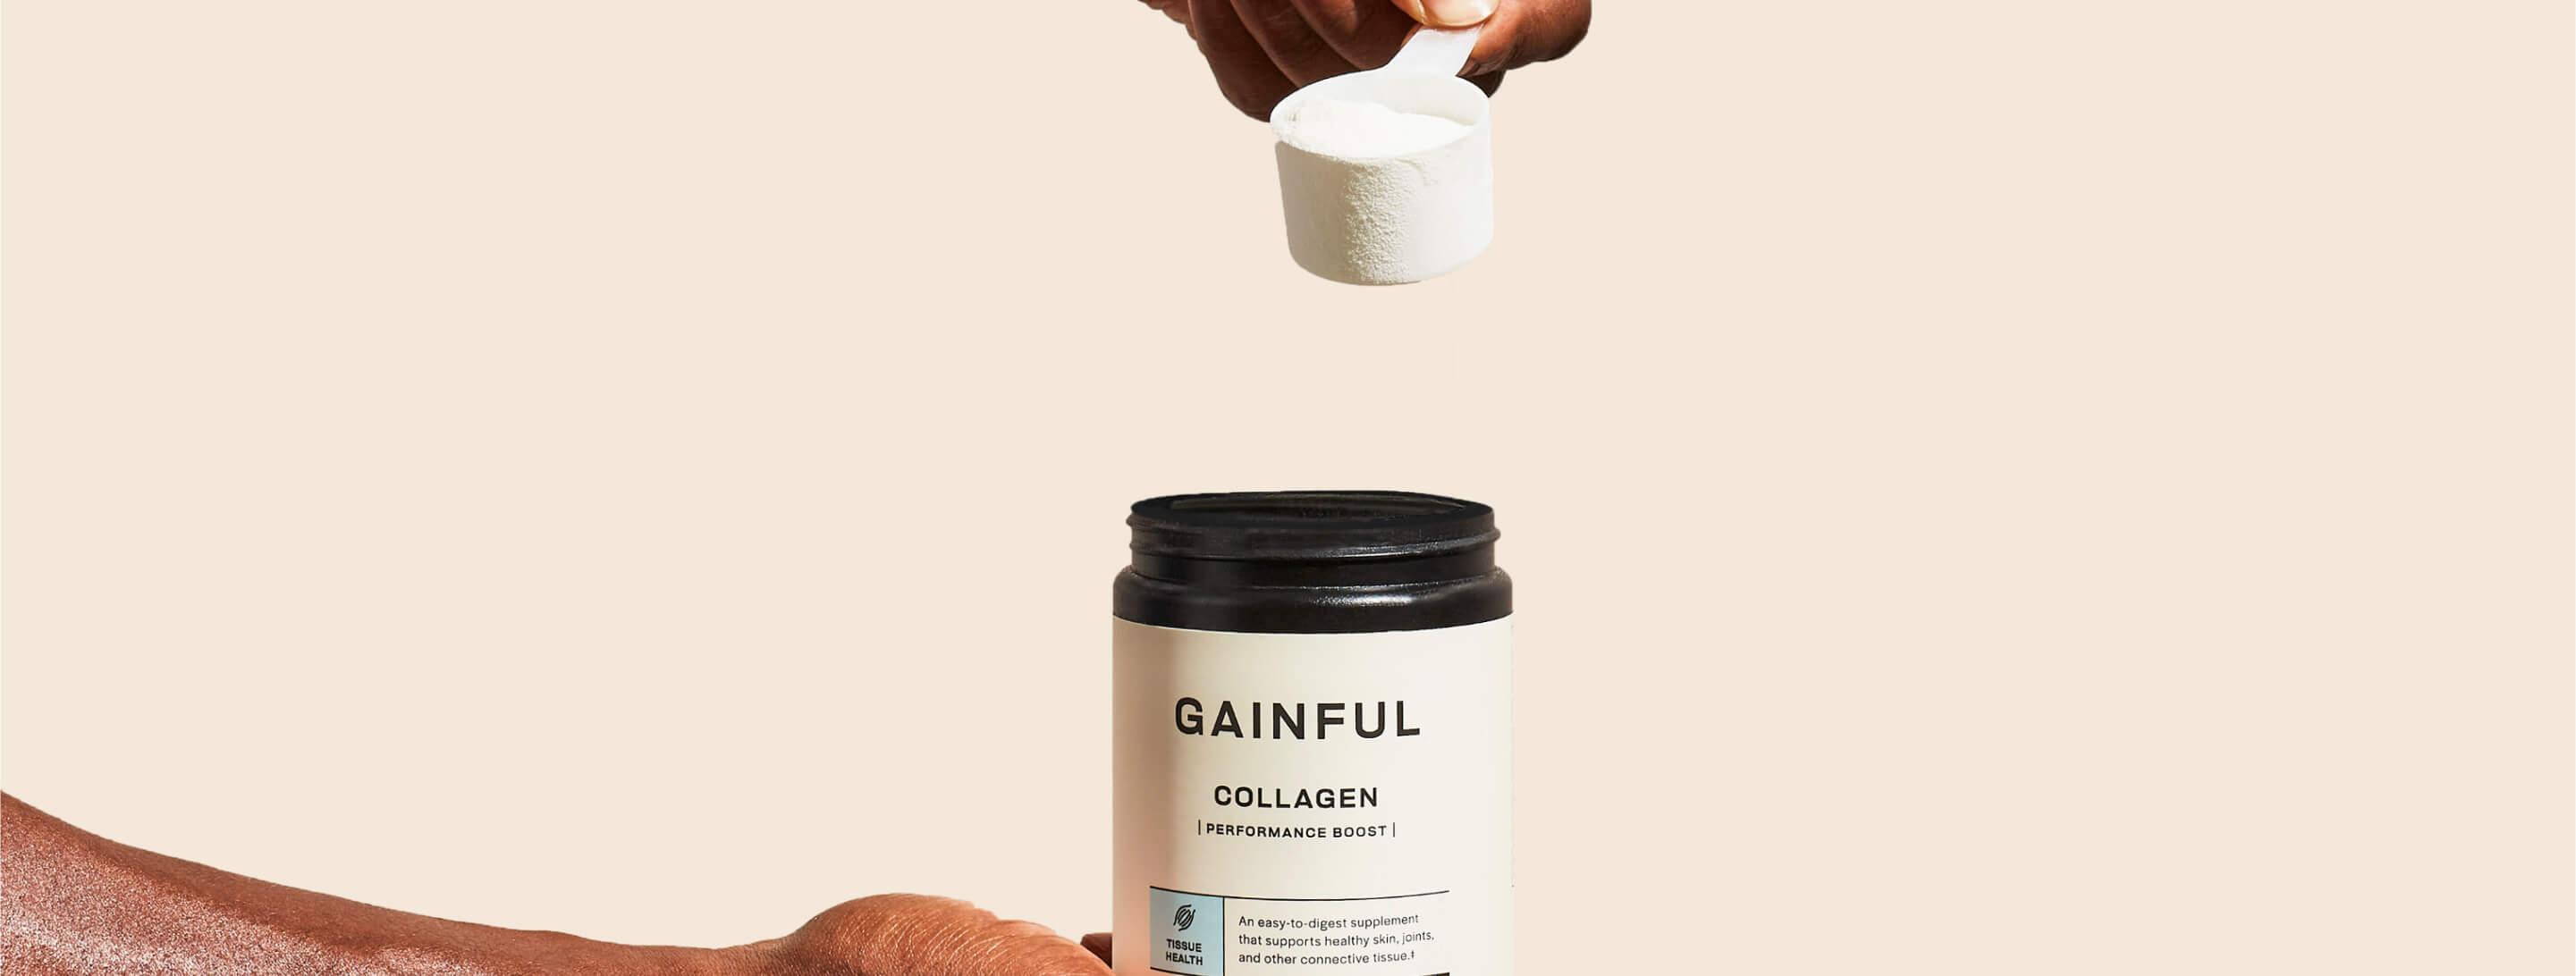 Gainful Collagen Jar